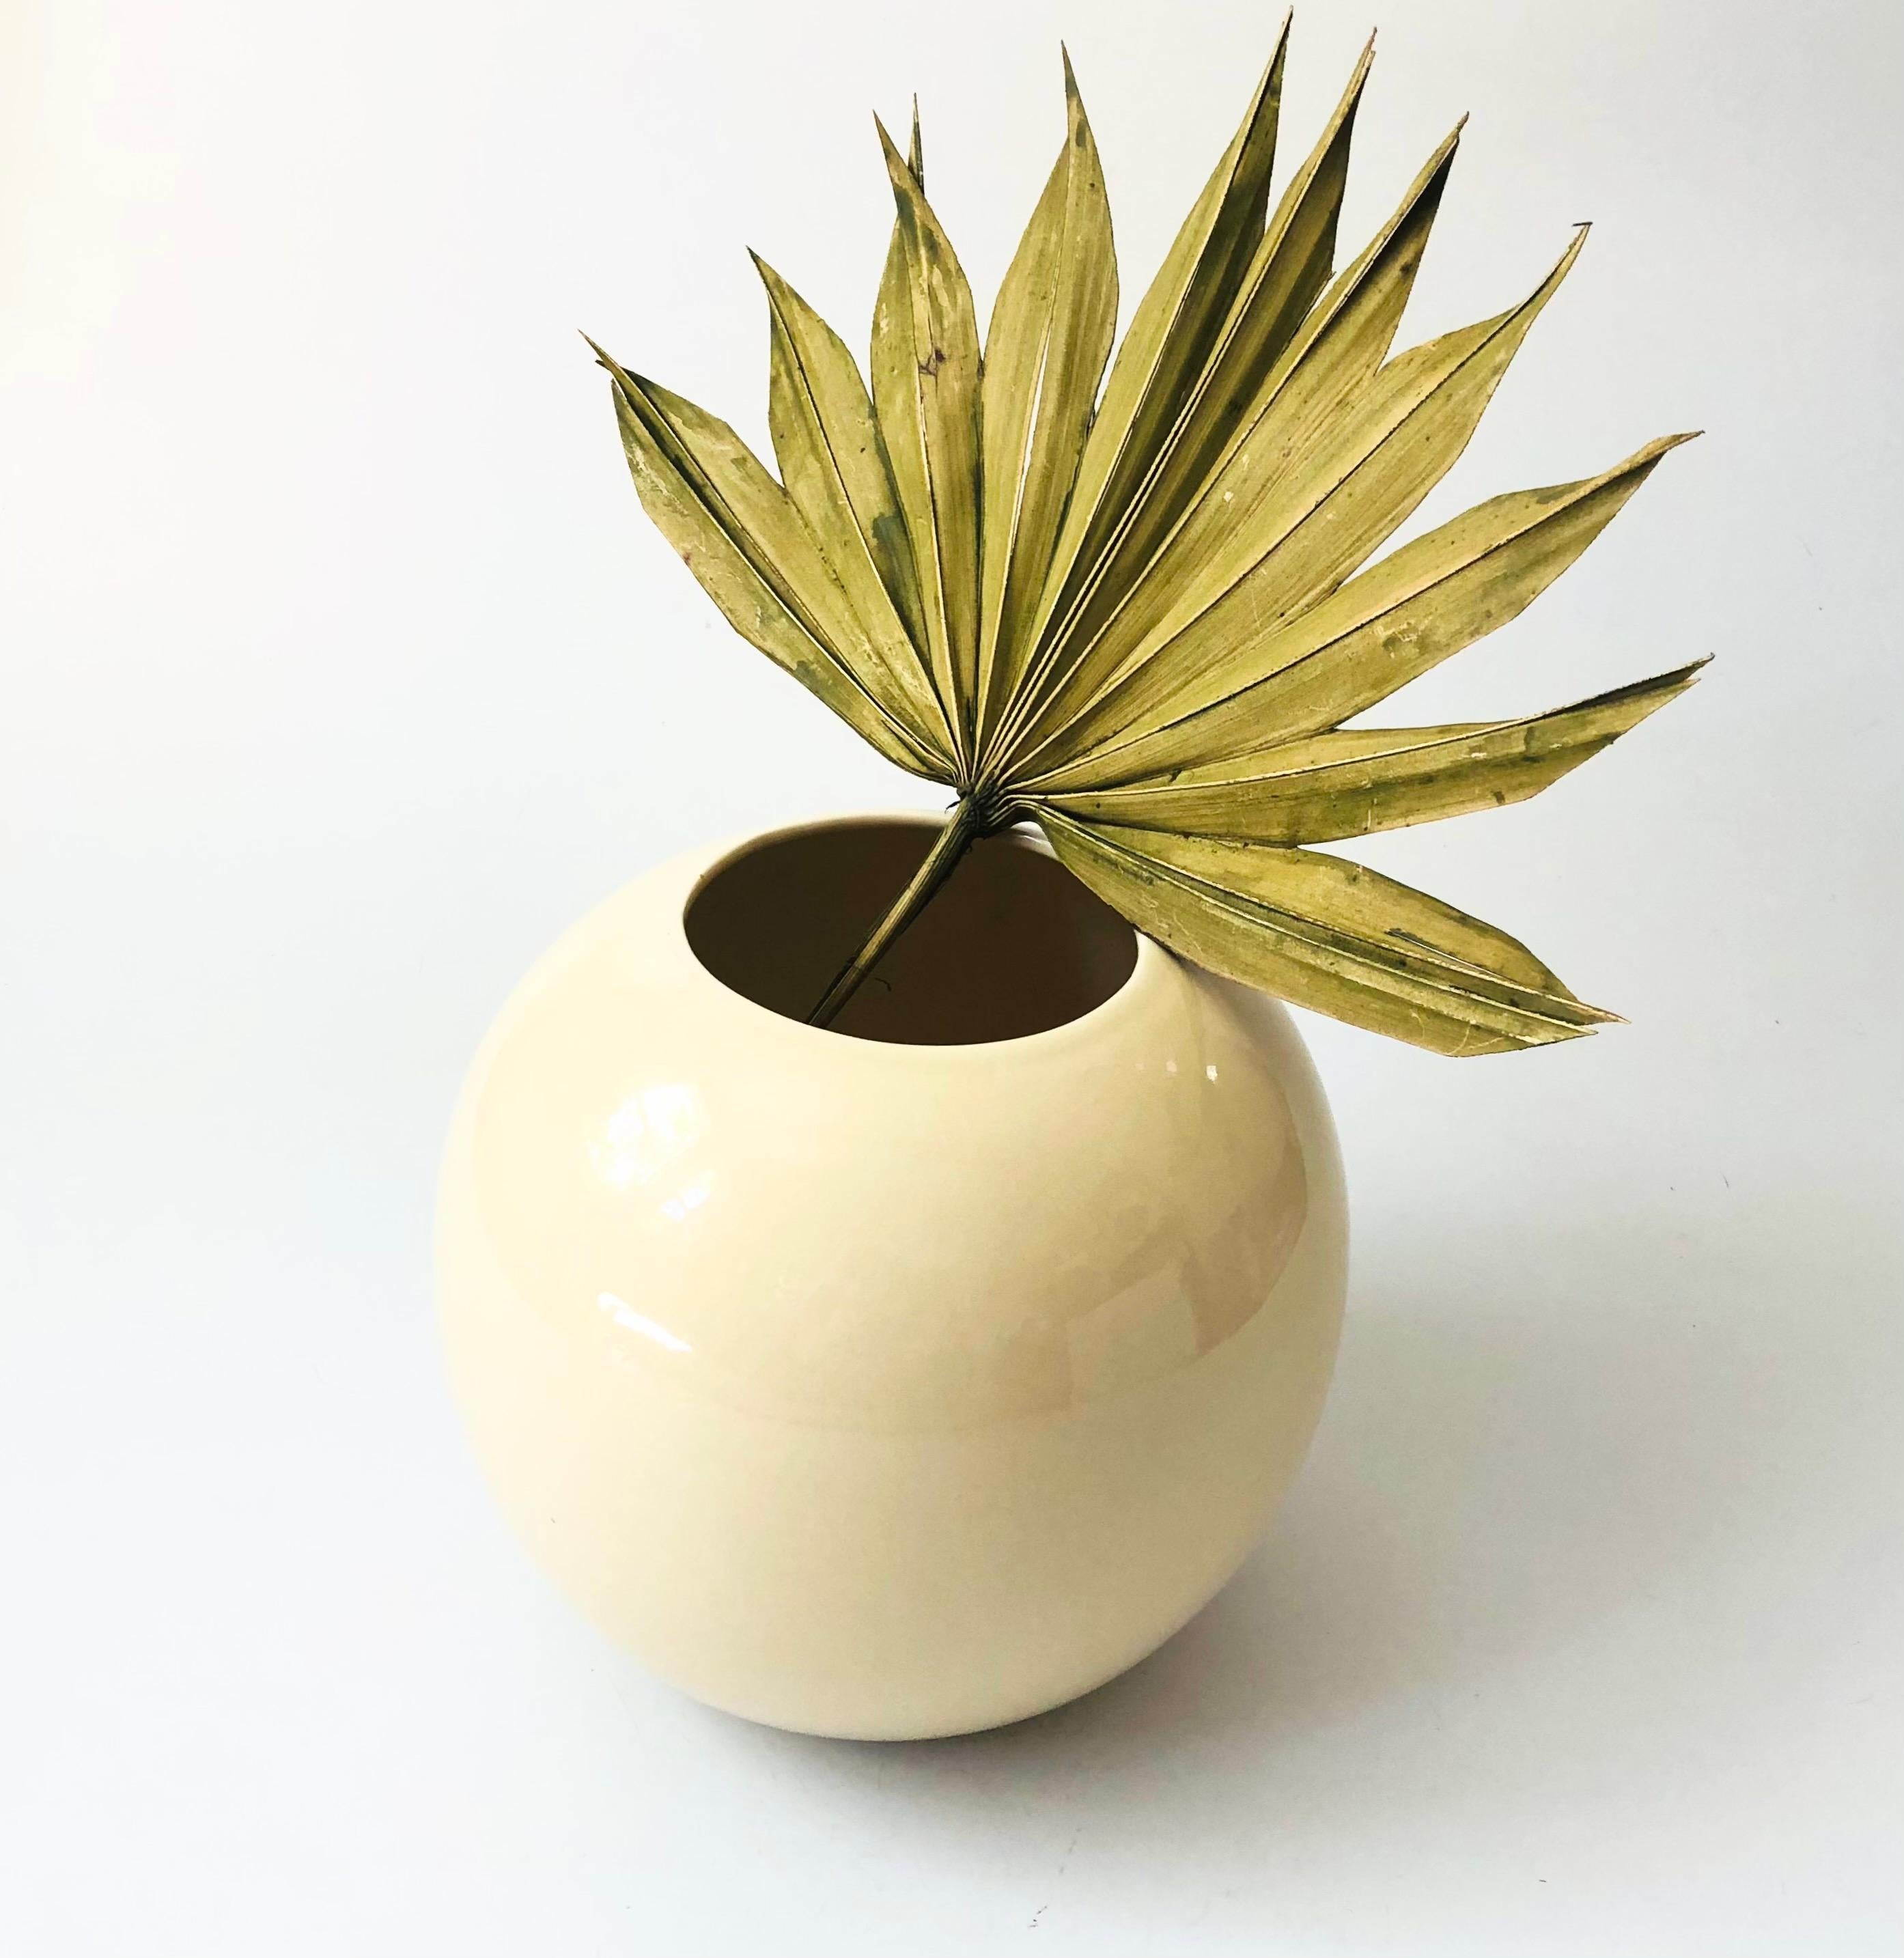 Un vase en céramique vintage des années 80. Émail crème brillant dans une forme sphérique simple et moderne.

